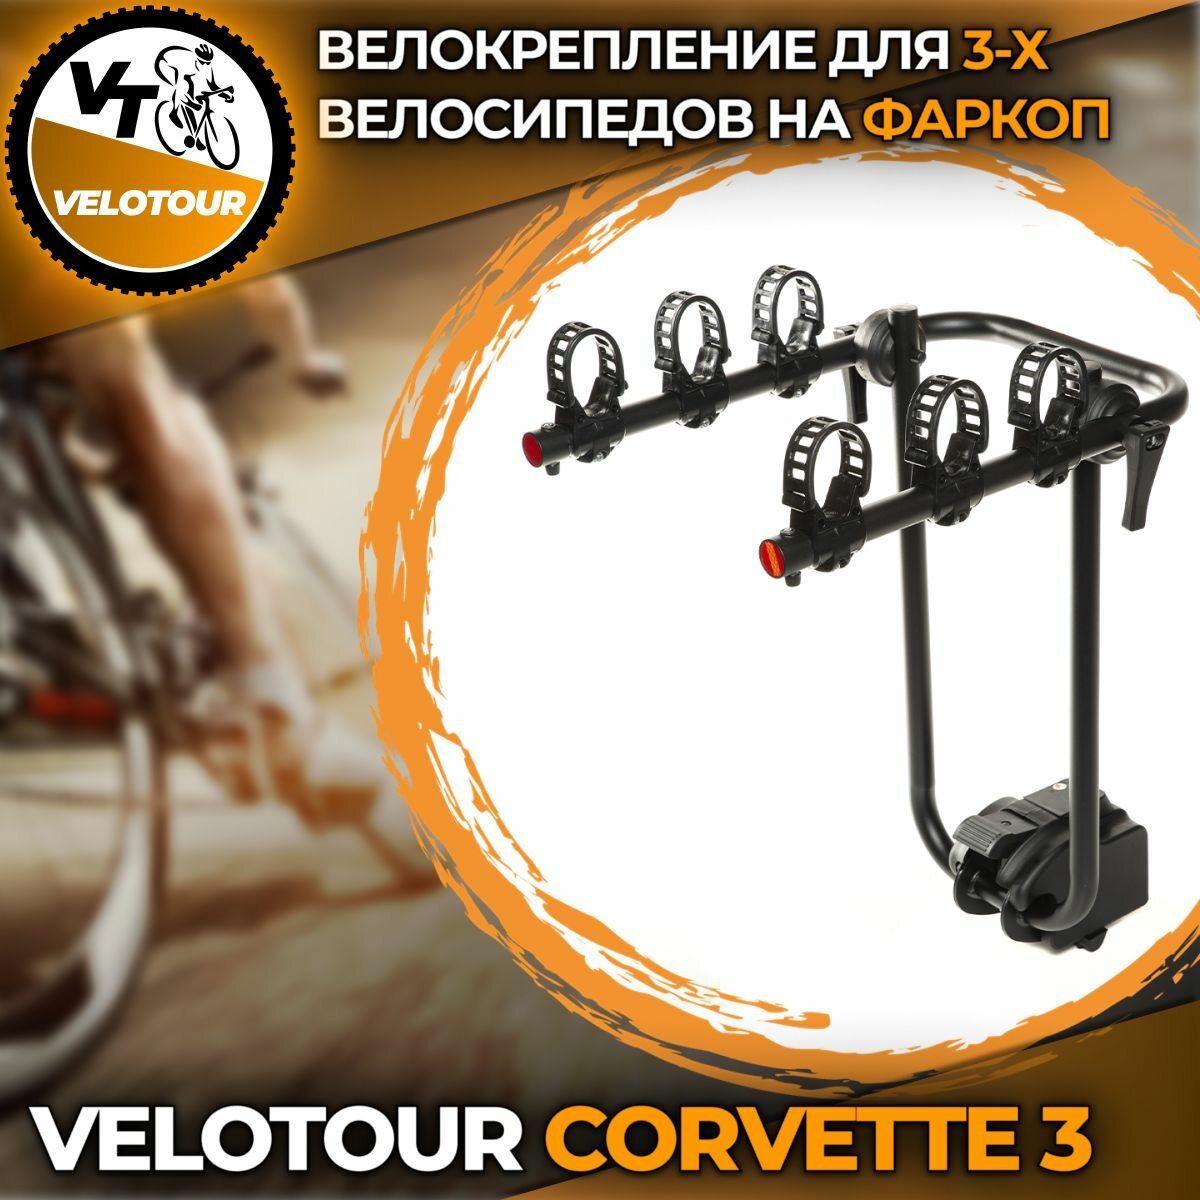 Велокрепление на фаркоп подвесной крепеж VeloTour Corvette 3 (TB-502-3) для 3-х велосипедов, чёрный (коробка)